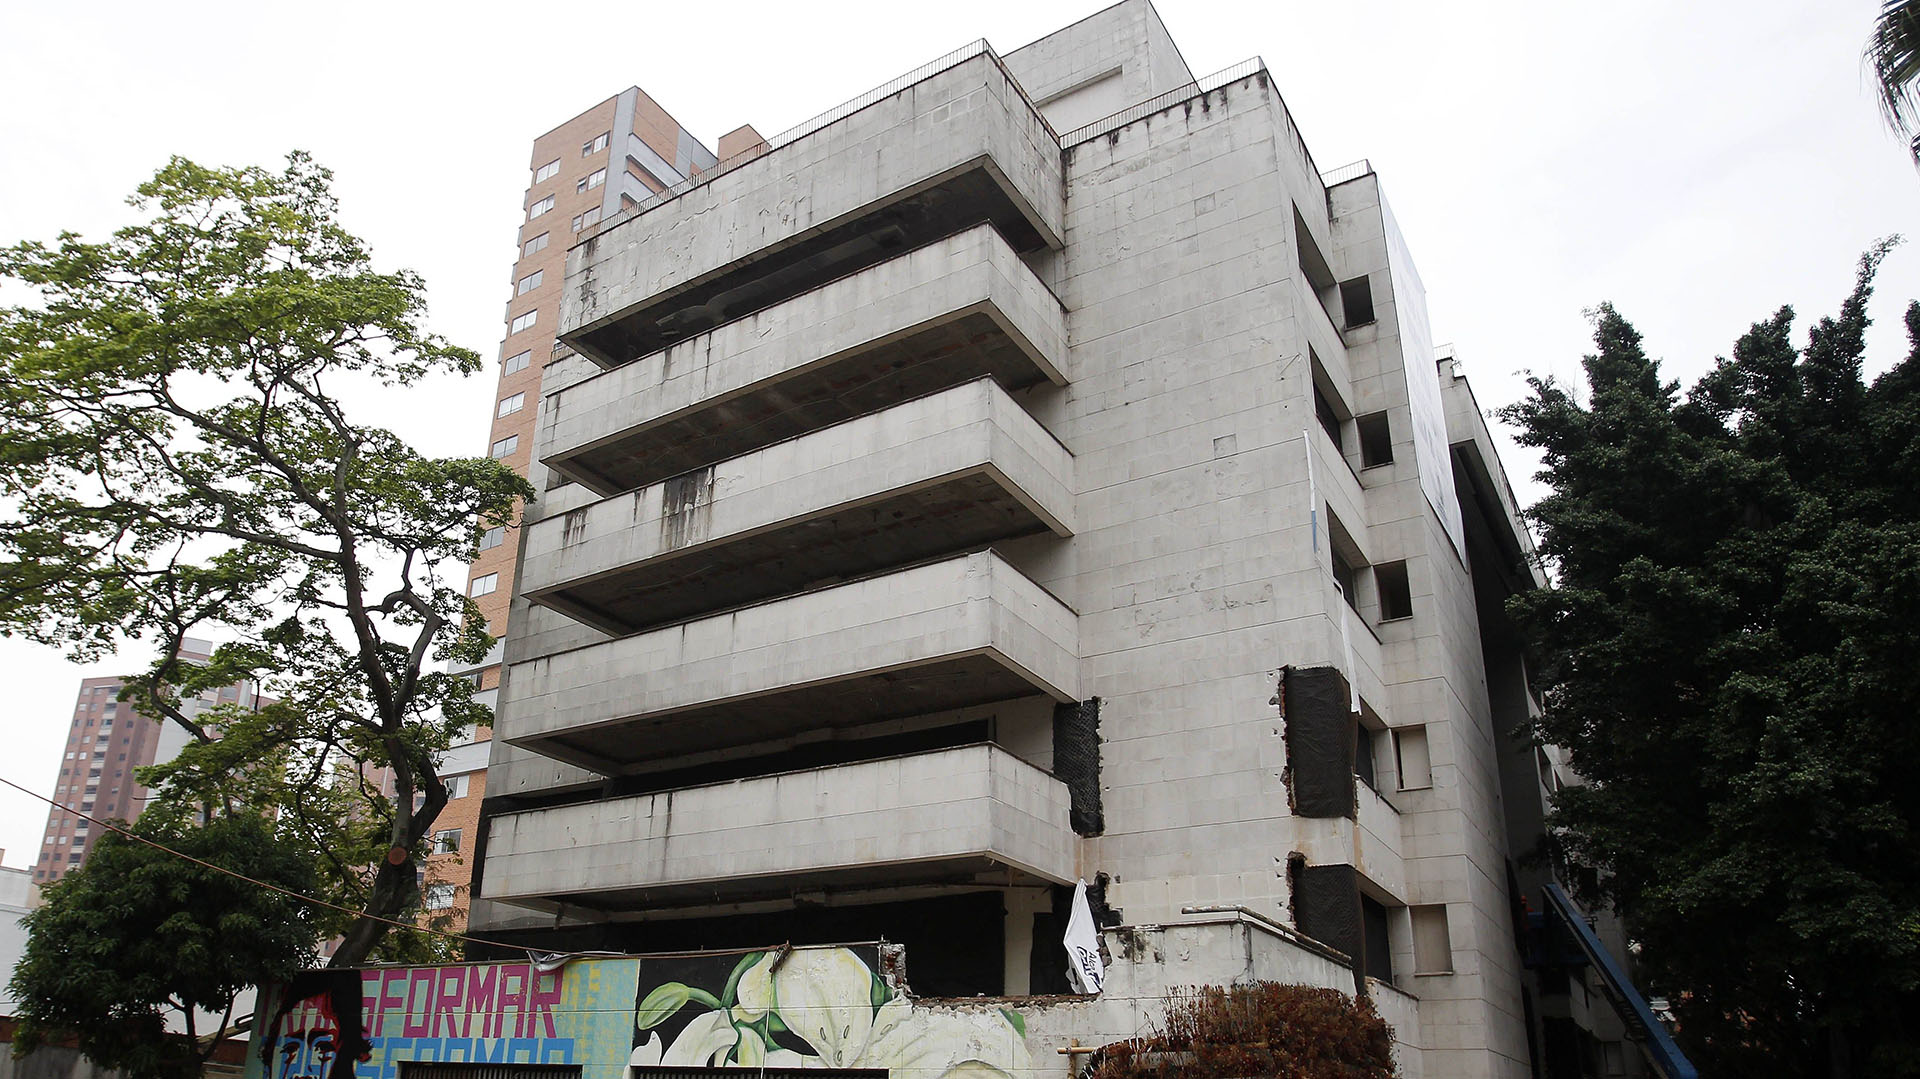 El edificio Mónaco, construido en los 80’s por Pablo Escobar, será destruido este viernes. (EFE)